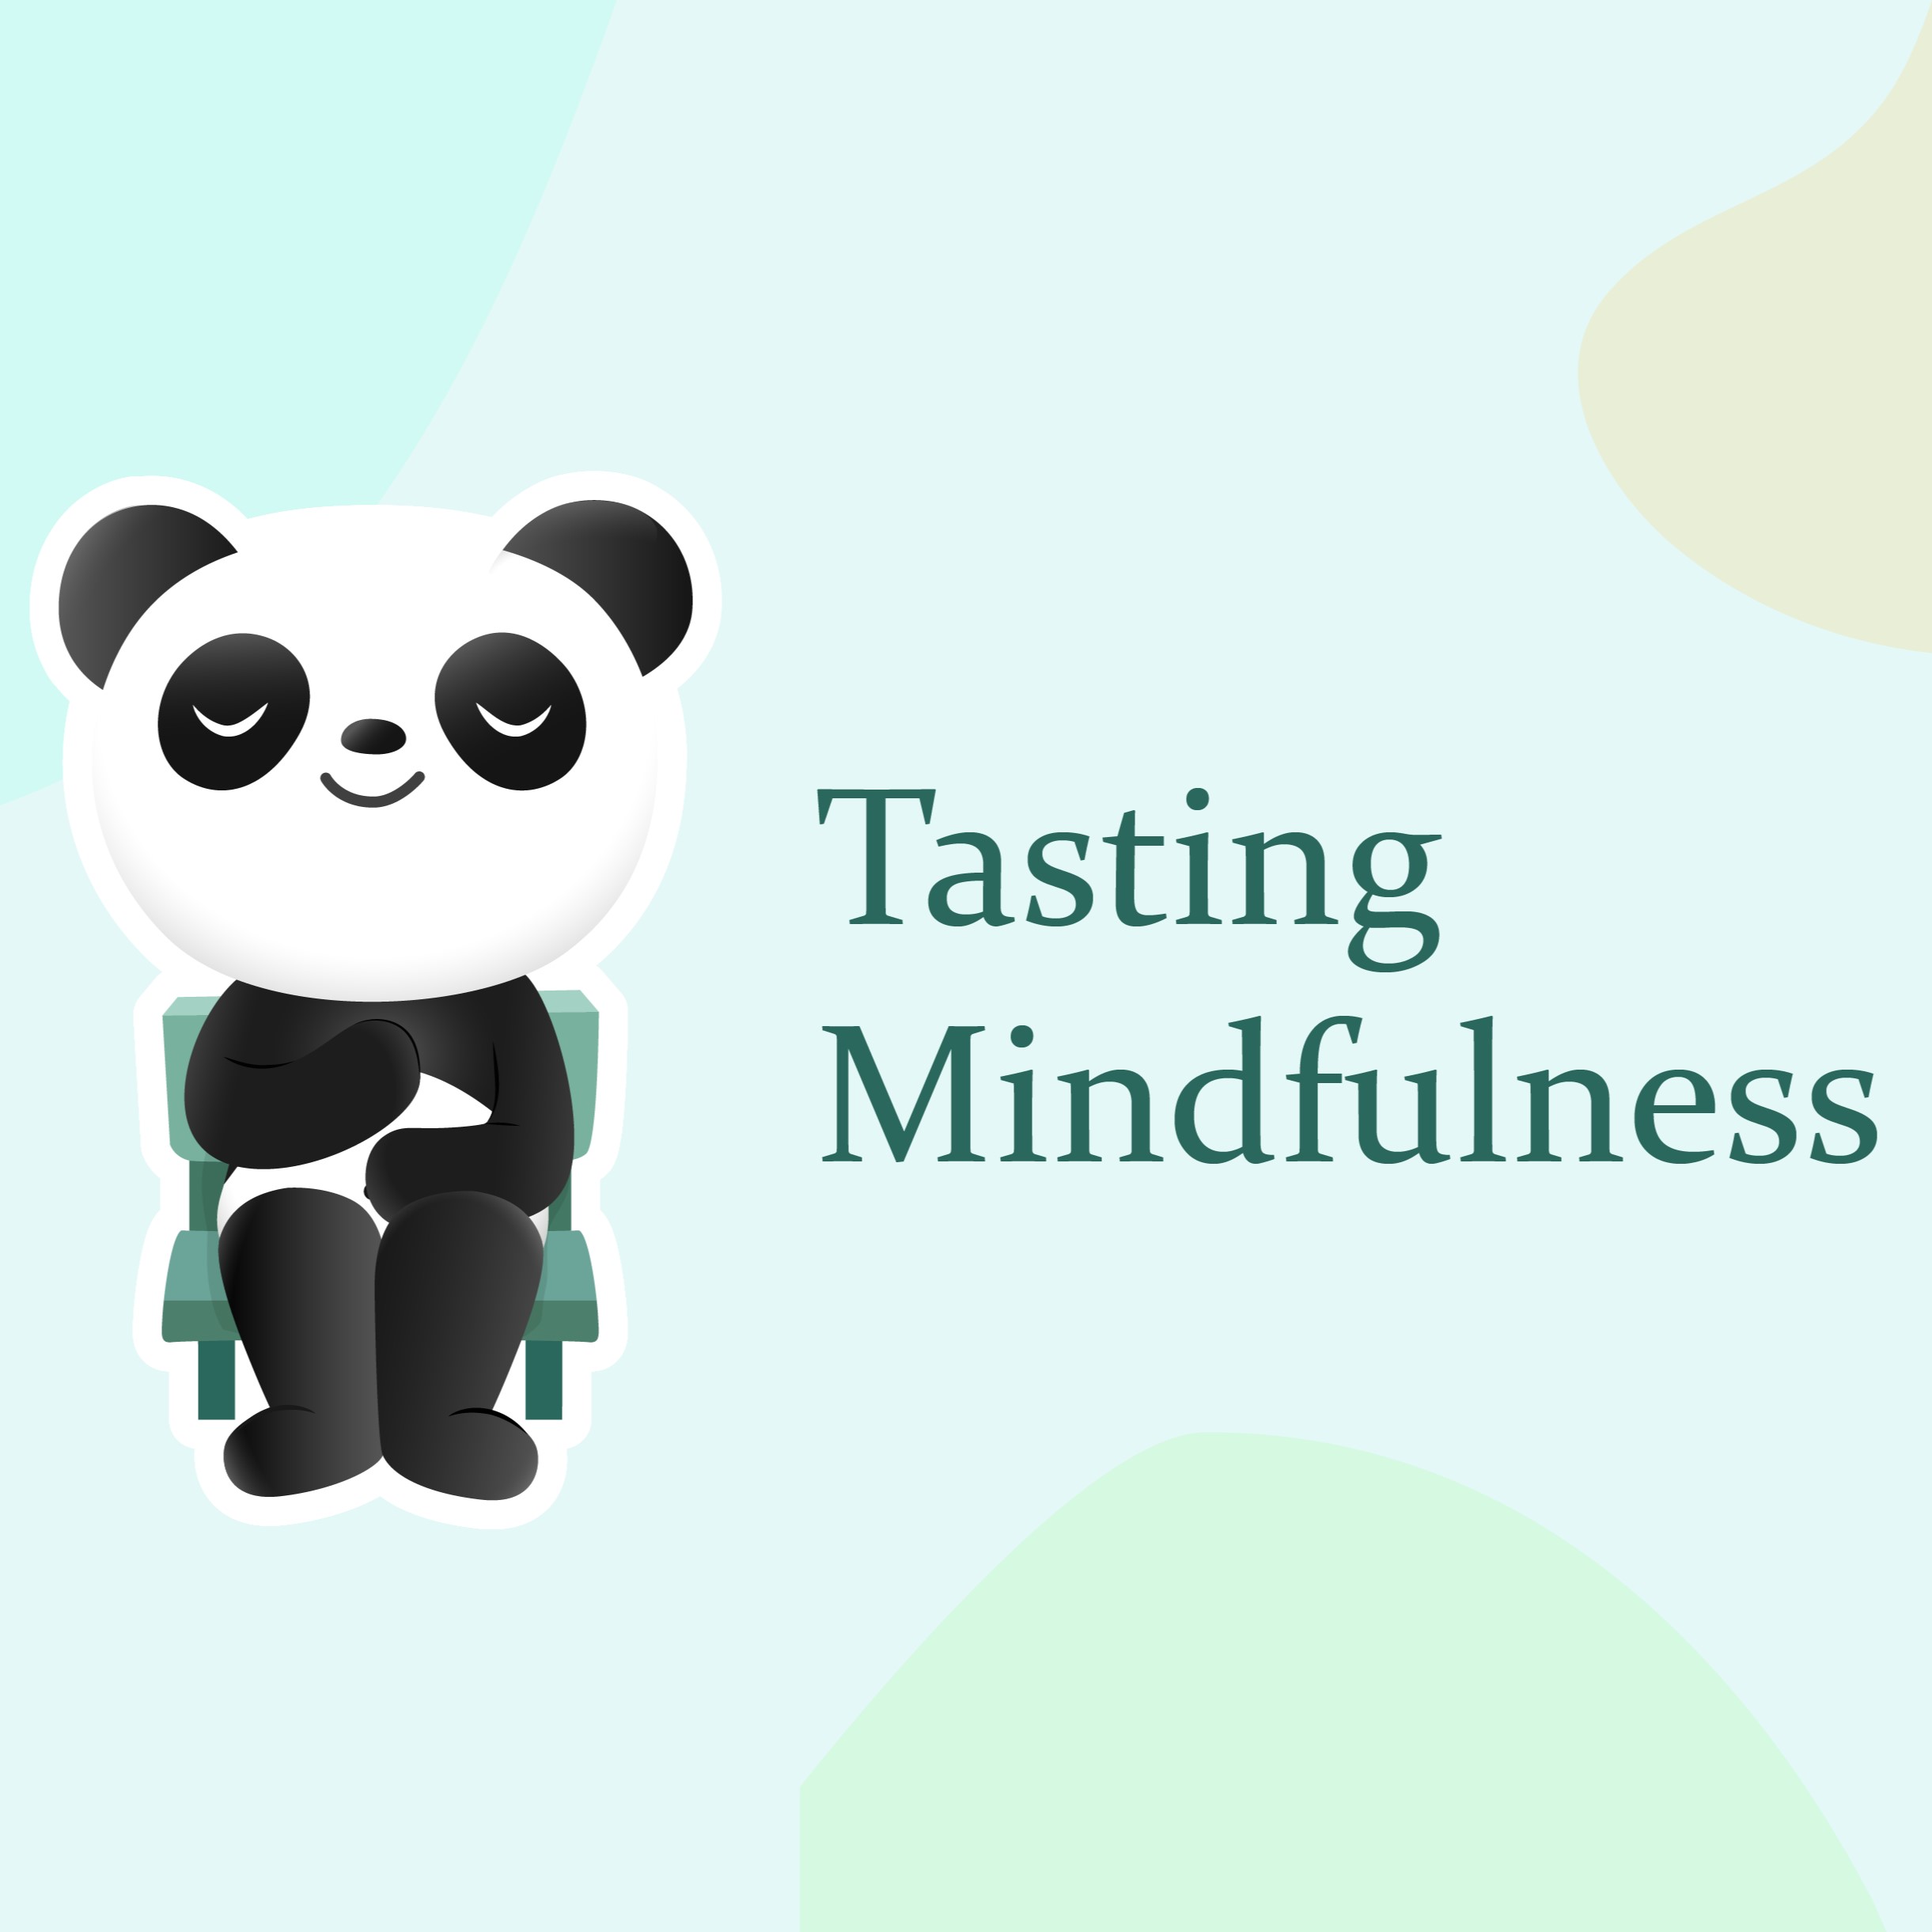 Tasting mindfulness